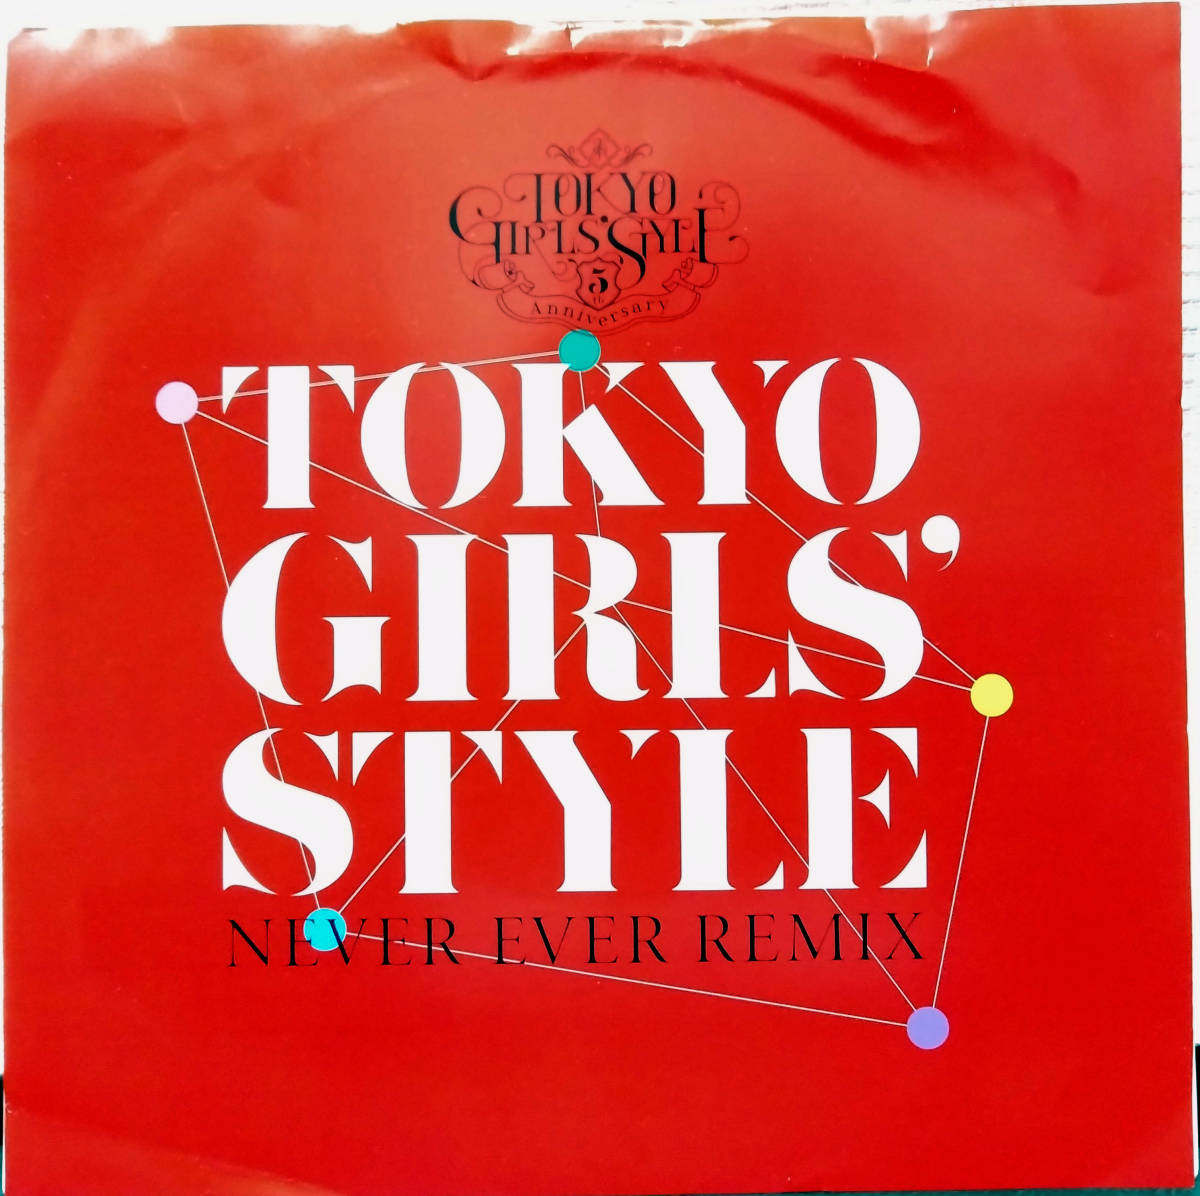 試聴 BLU-SWING Remix収録 7inch. 東京女子流 TOKYO GIRLS’ STYLE / NEVER EVER □ avex trax DUB MIX house テクノの画像1